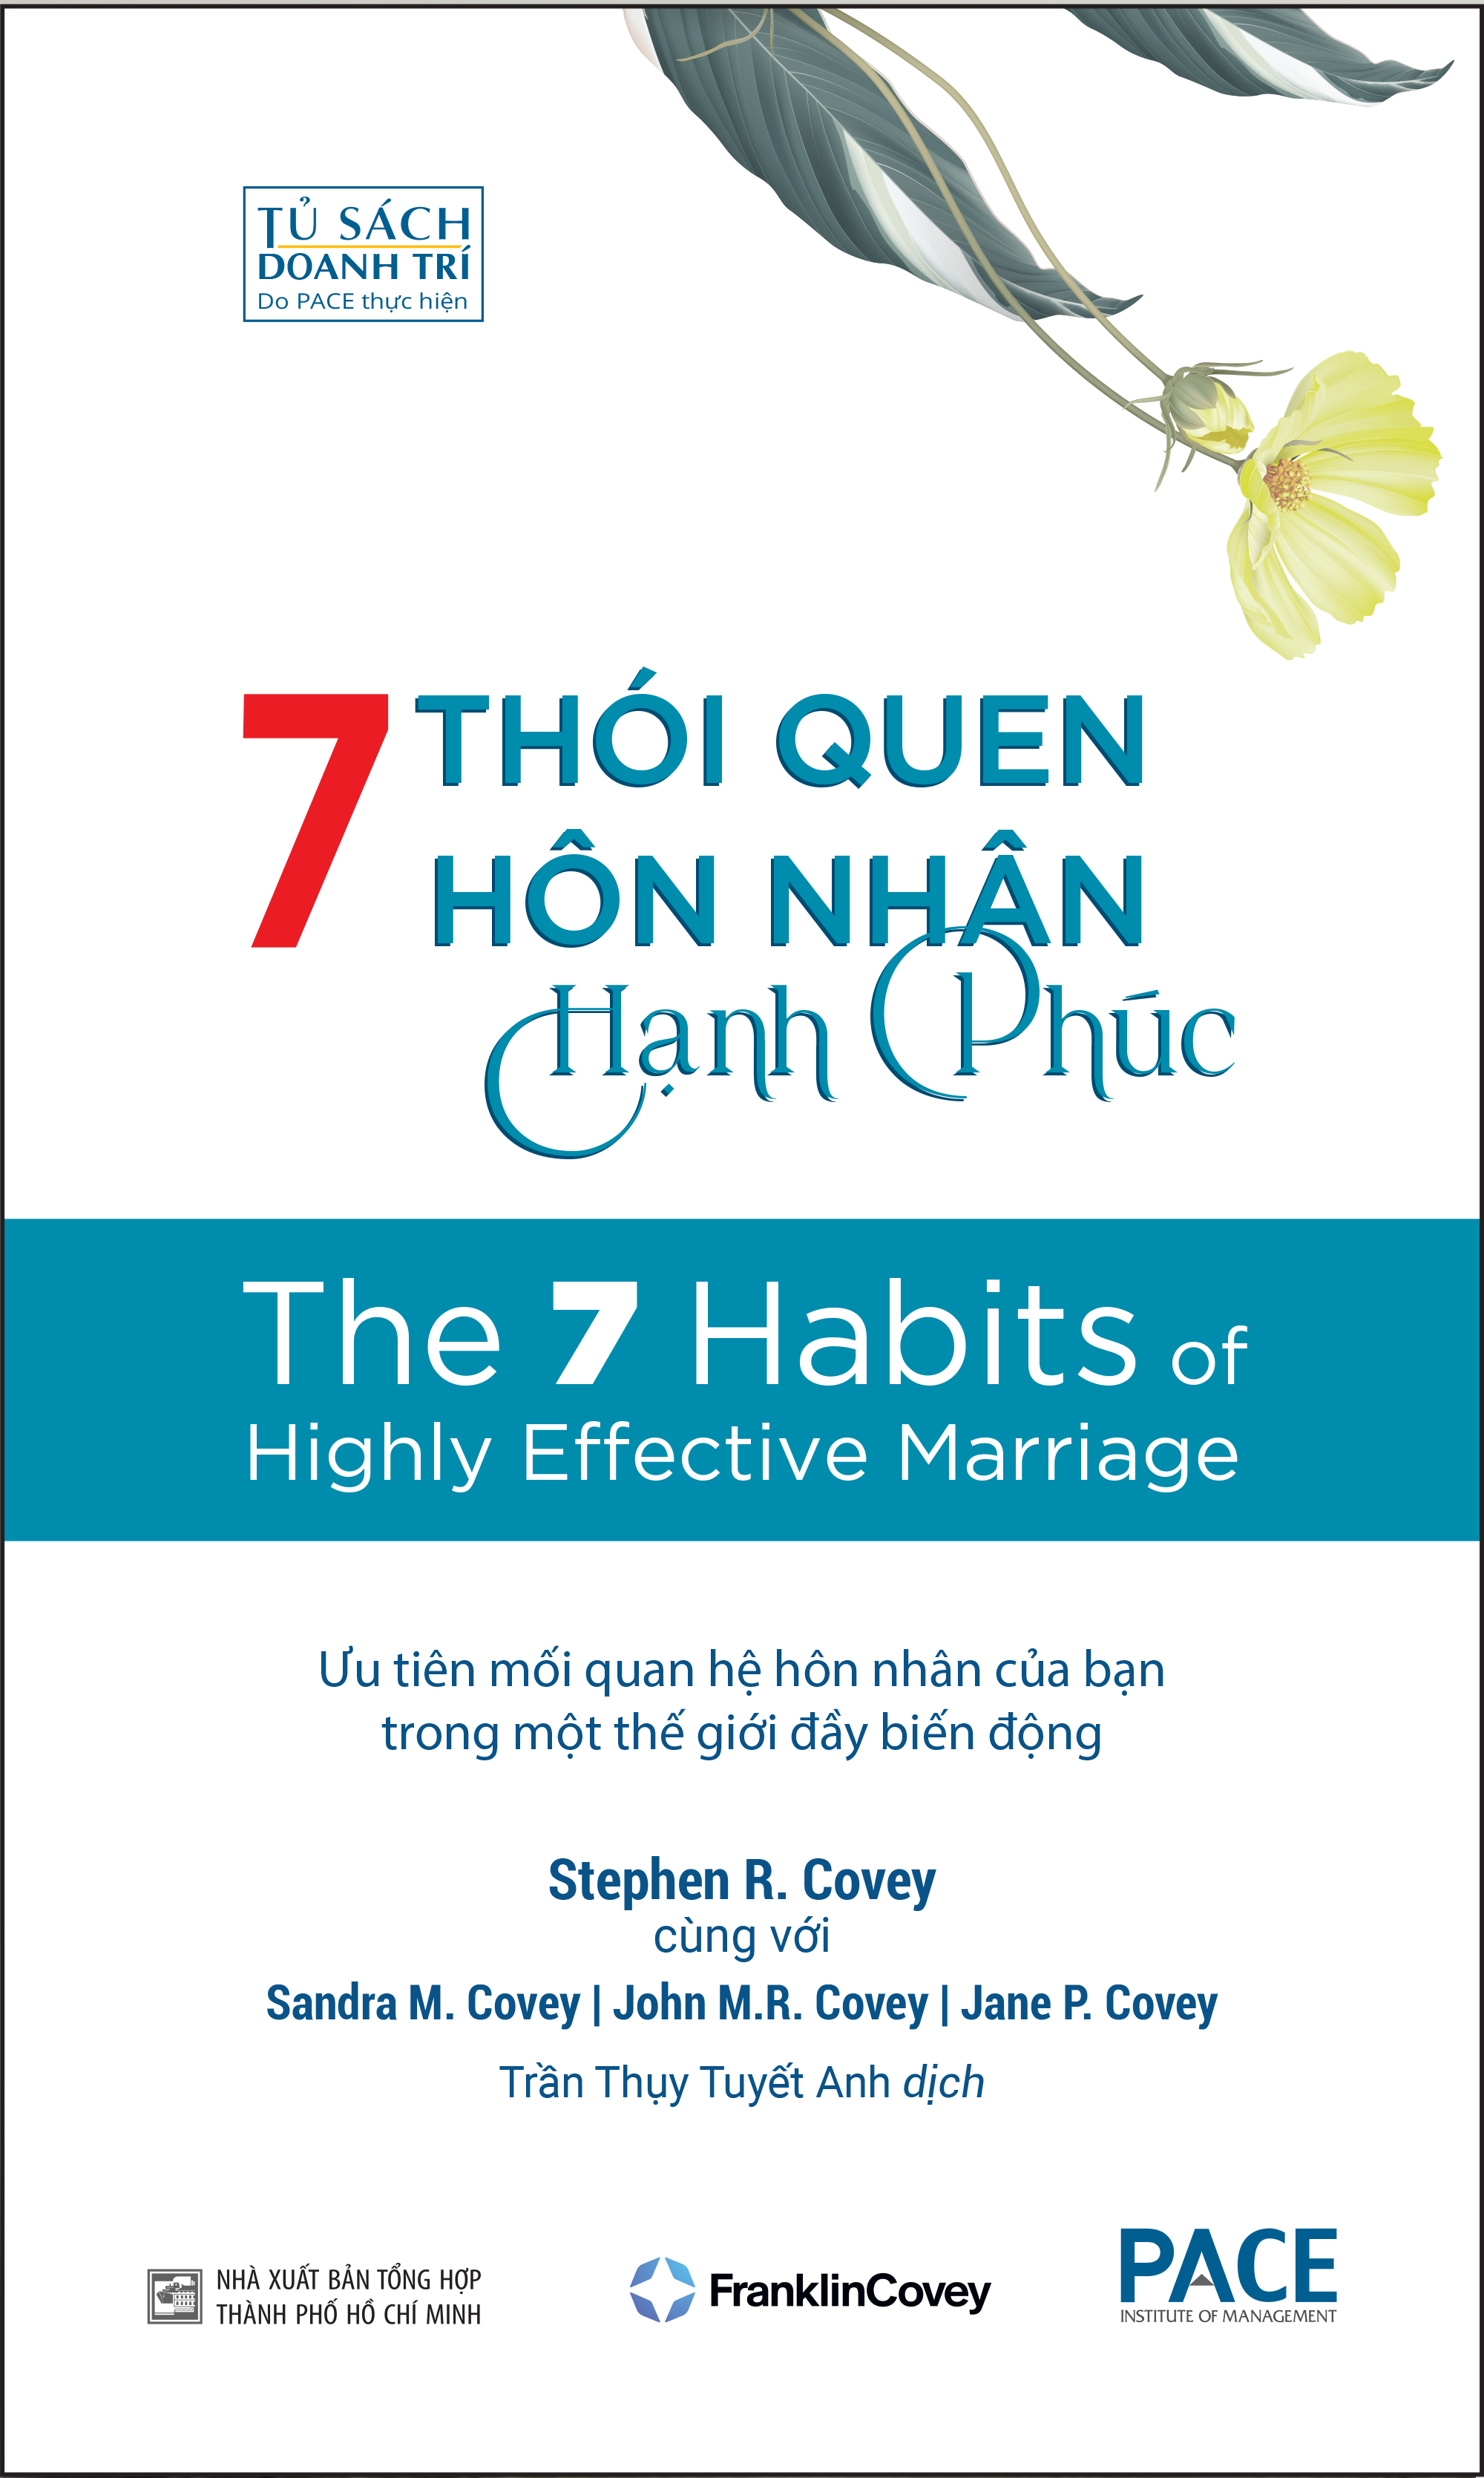 Hình ảnh 7 THÓI QUEN HÔN NHÂN HẠNH PHÚC (The 7 Habits of Highly Effective Marriage) - Stephen R. Covey, Sandra M. Covey, TS. John M.R. Covey, Jane P. Covey - Trần Thụy Tuyết Anh dịch - Tái bản - (bìa mềm)